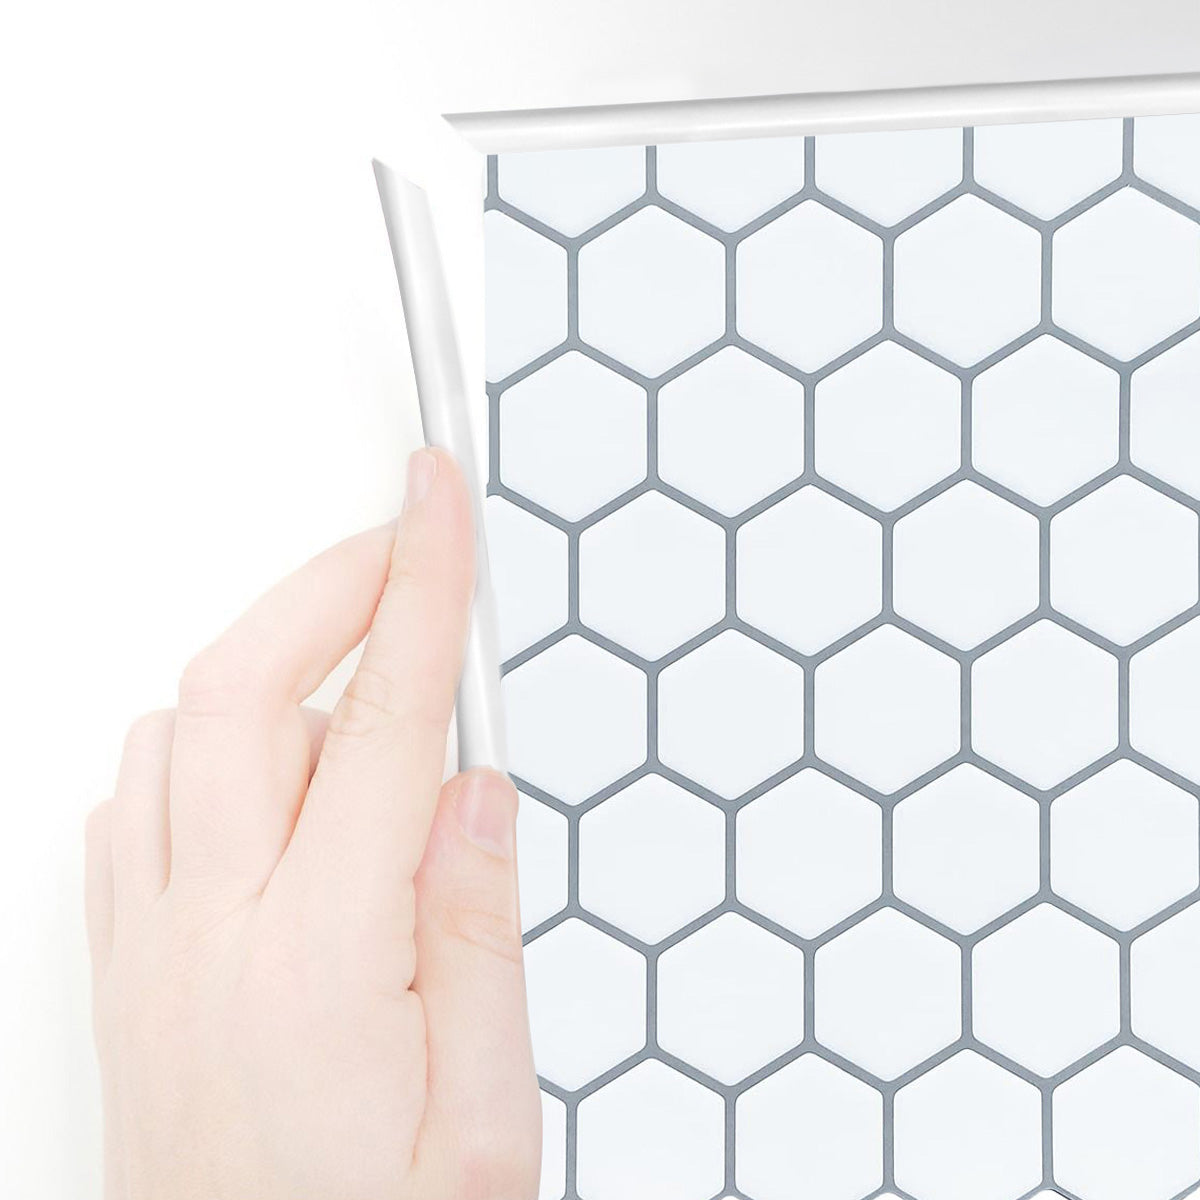 White edge trim applied around white hexagon tiles